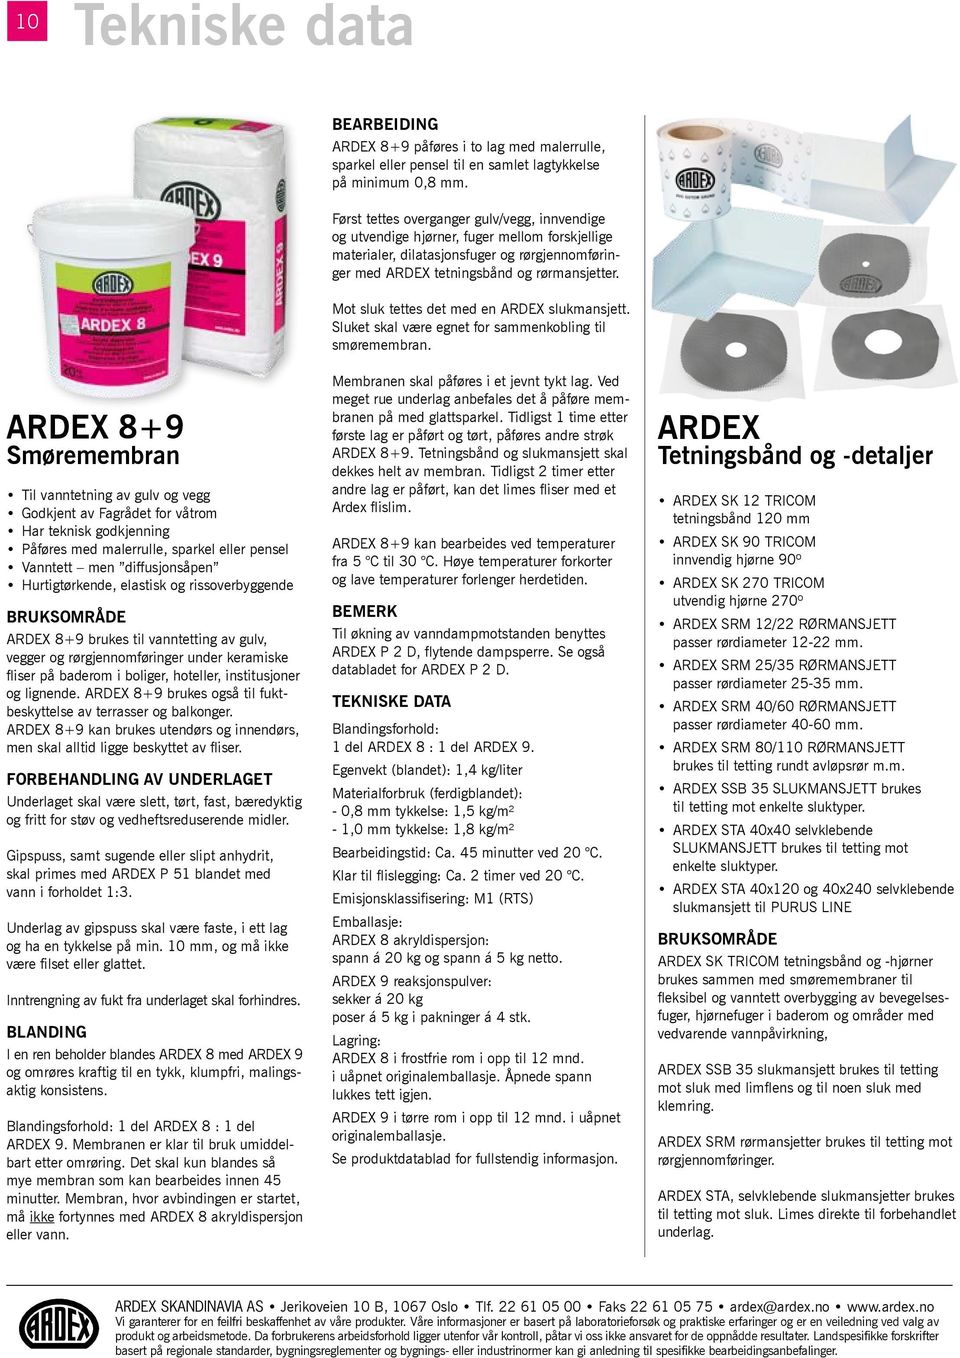 ARDEX 8+9 Smøremembran Til vanntetning av gulv og vegg Godkjent av Fagrådet for våtrom Har teknisk godkjenning Påføres med malerrulle, sparkel eller pensel Vanntett men diffusjonsåpen Hurtigtørkende,